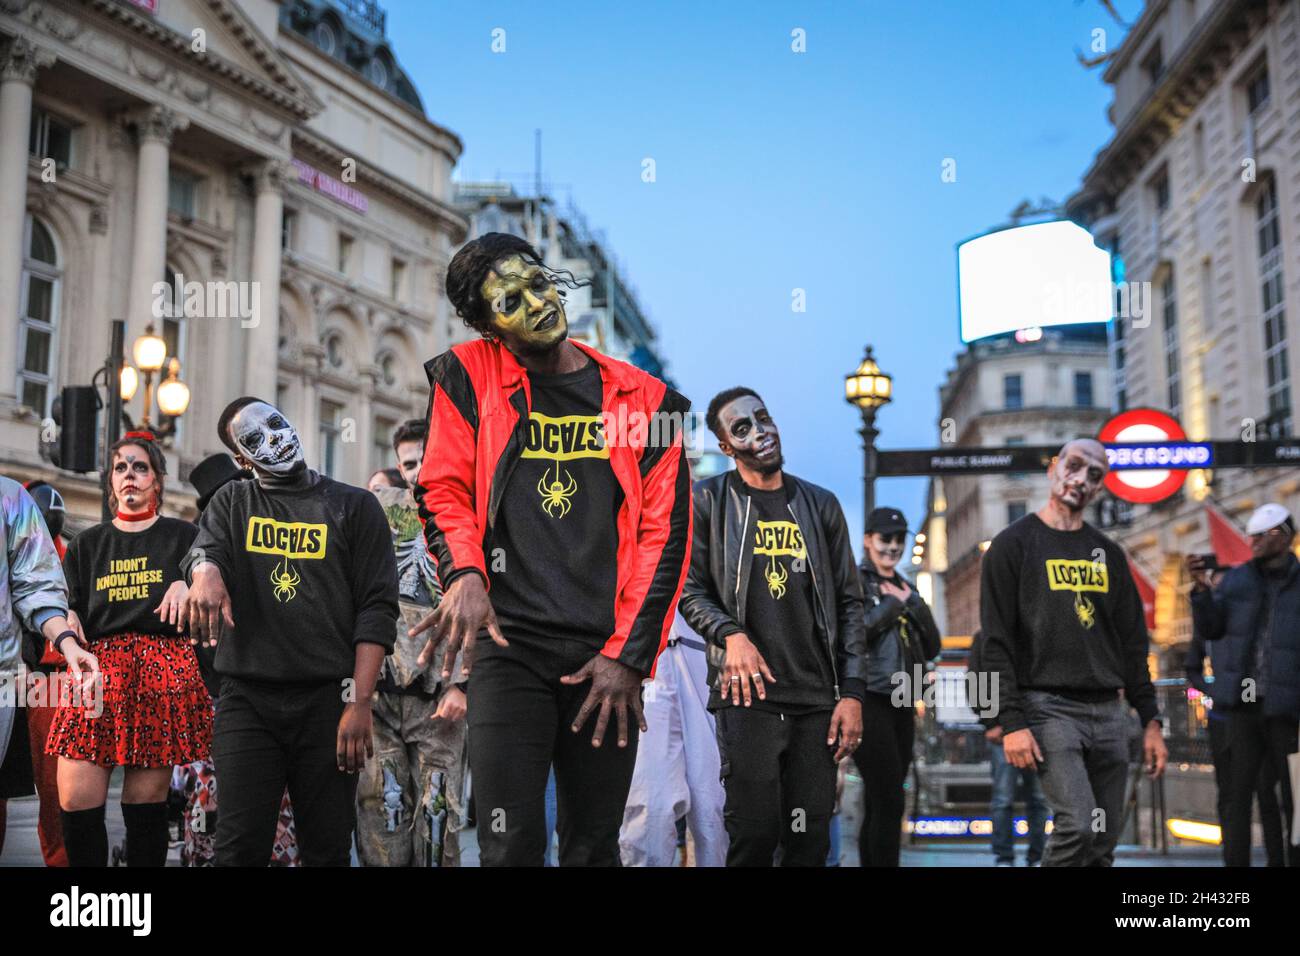 Piccadilly Circus, Londres, Royaume-Uni.31 octobre 2021.Les danseurs recréent les célèbres scènes de danse zombie issues de la vidéo « Thriller » de Michael Jackson.Les fêtards prennent part à une fête de danse d'Halloween, comprenant un groupe de Locals.org, une plate-forme sociale basée à Londres, et se rencontrent pour réunir les Londoniens.Les passants sont encouragés à se joindre à eux et à danser.Credit: Imagetraceur/Alamy Live News Banque D'Images